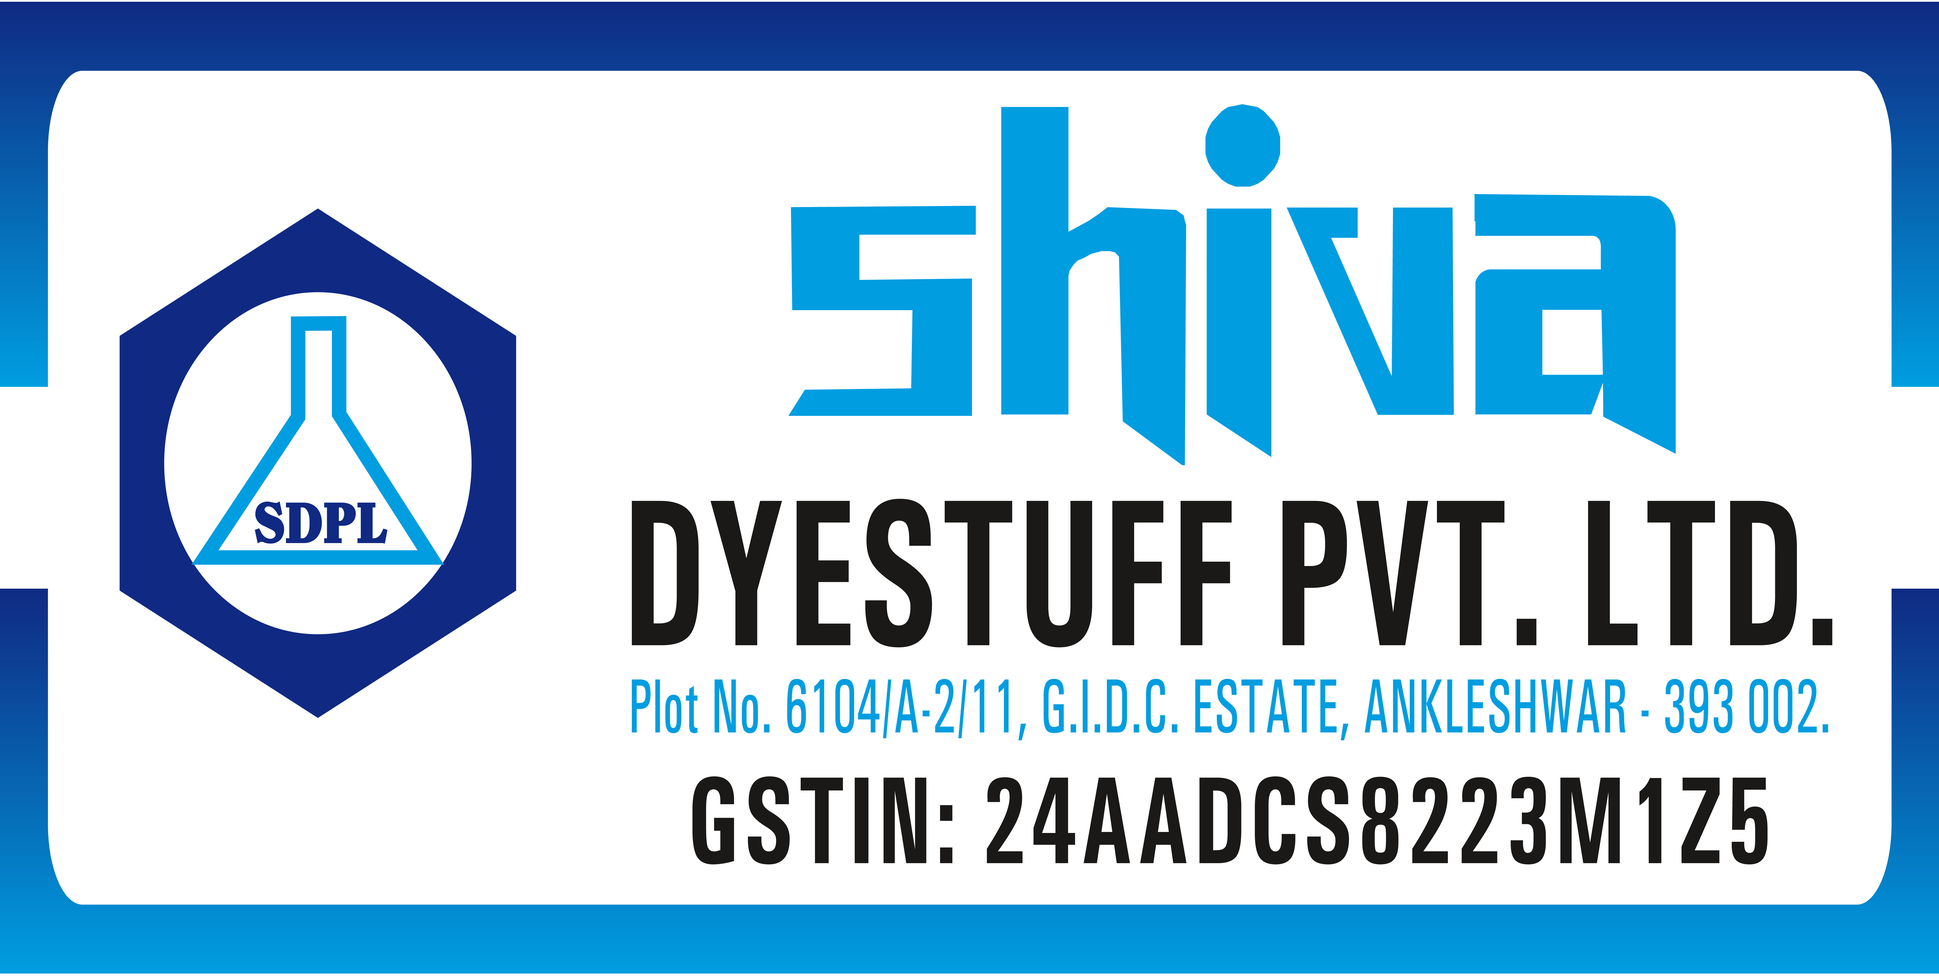 Shiva dyestuff